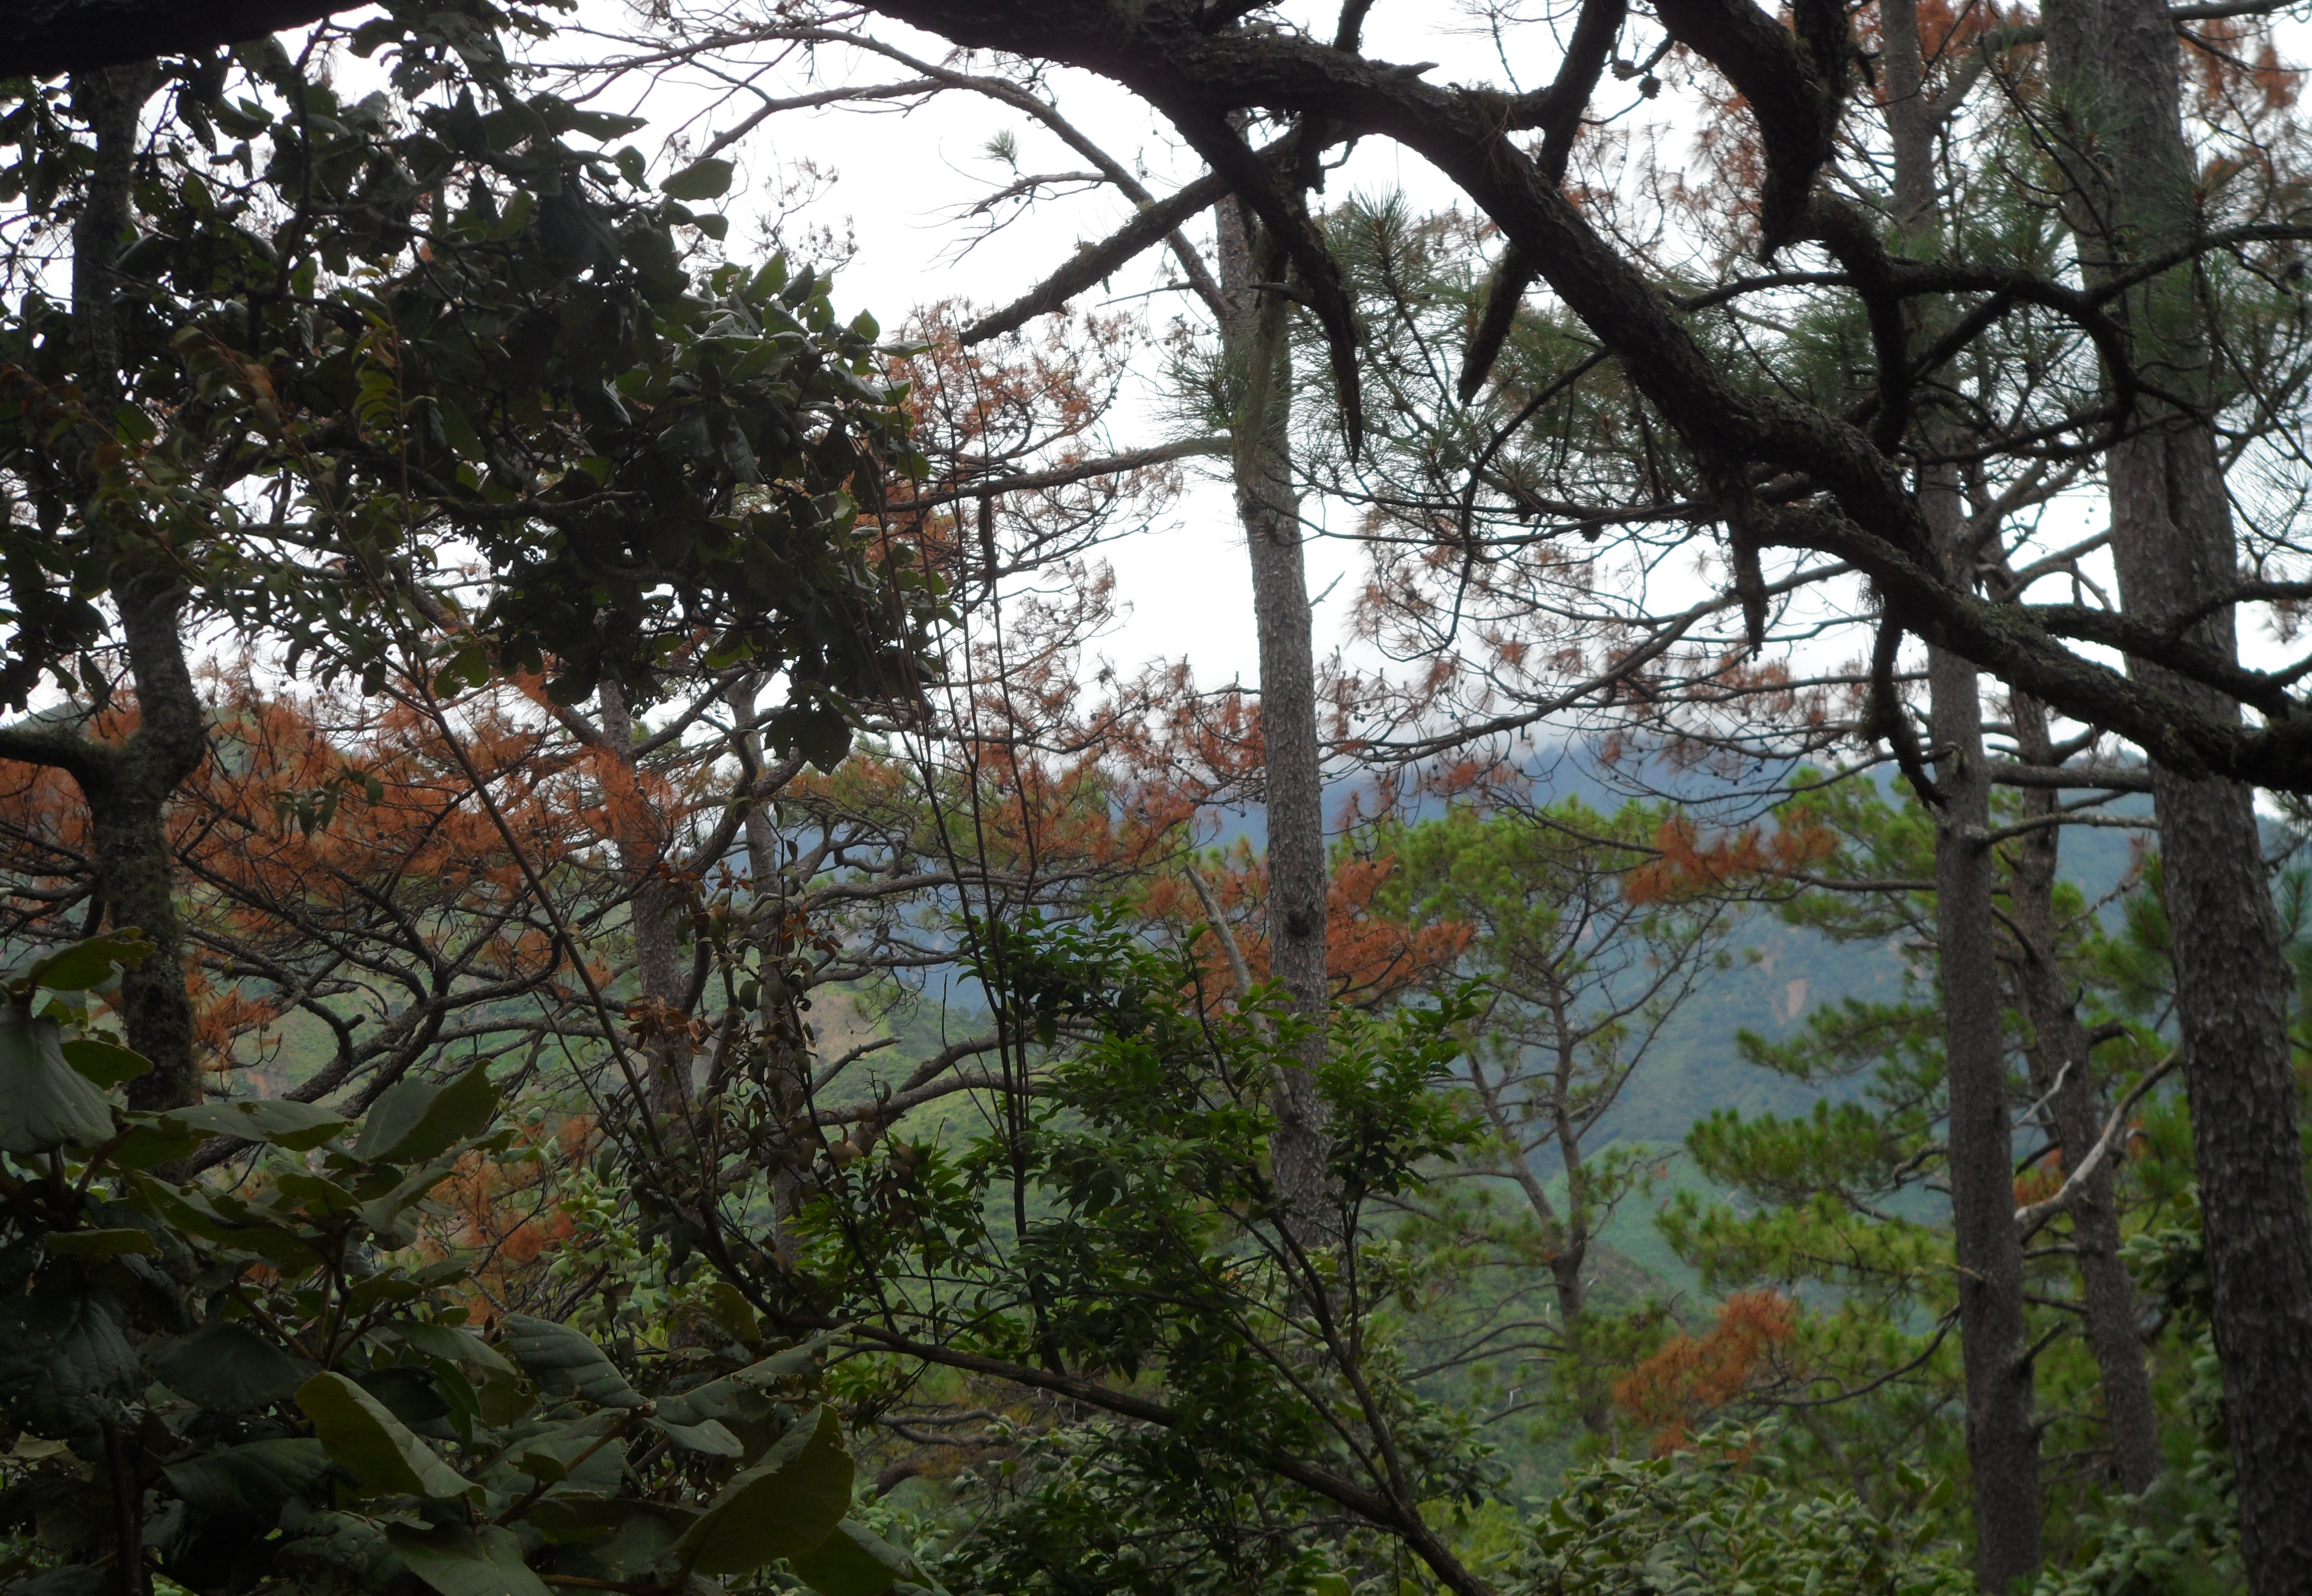 Incendios forestales: amenaza de los bosques en Oaxaca